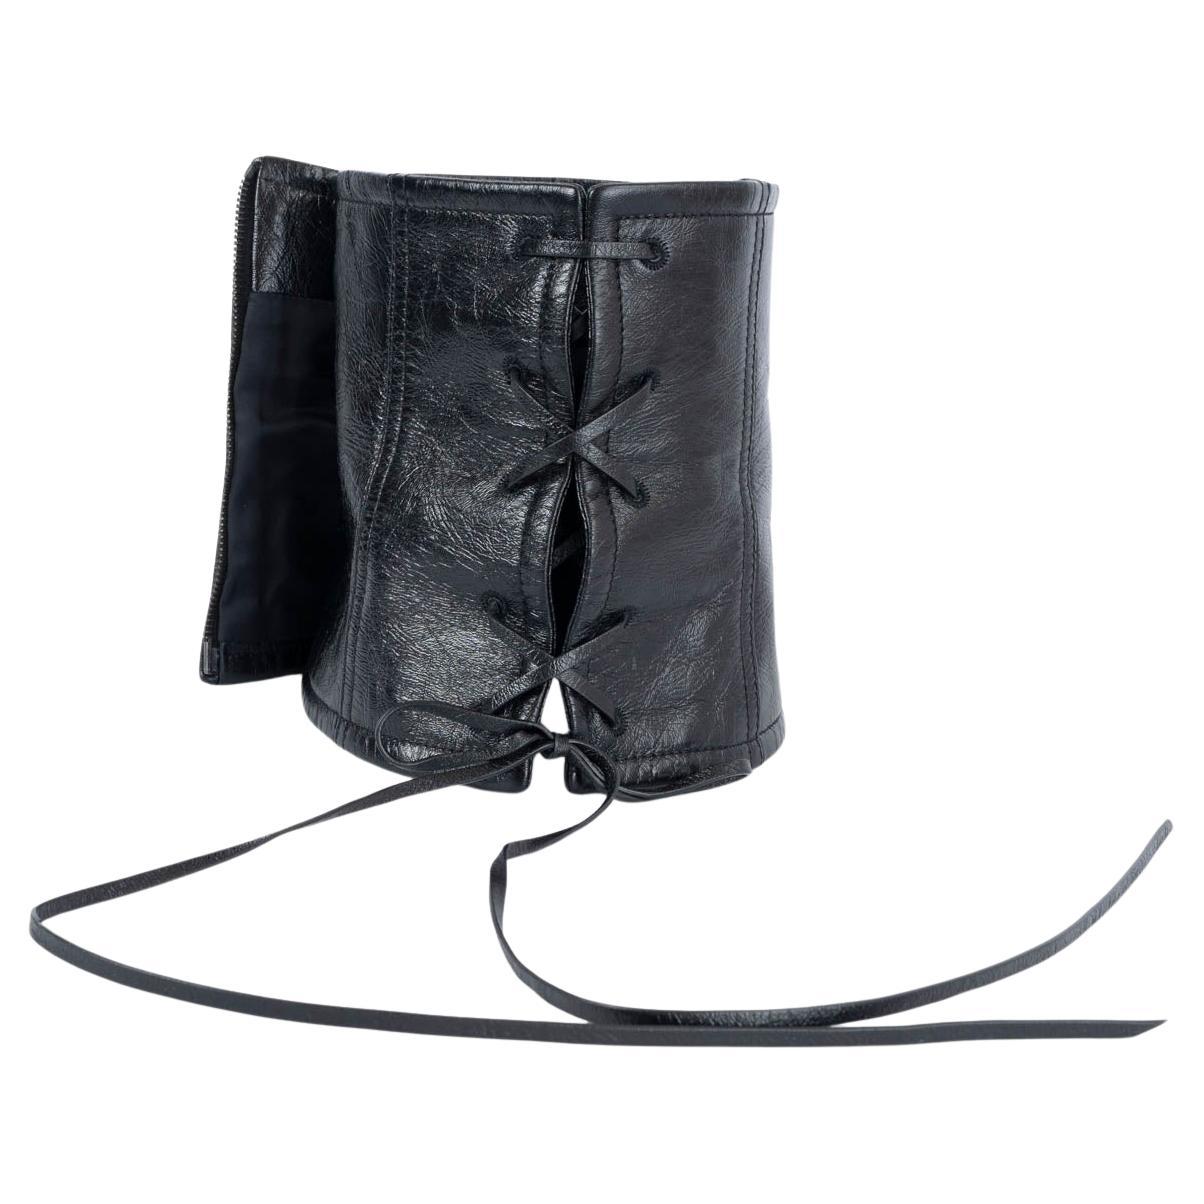 MIU MIU ceinture en cuir noir 2019 LACE-UP WIDE WAIST en vente